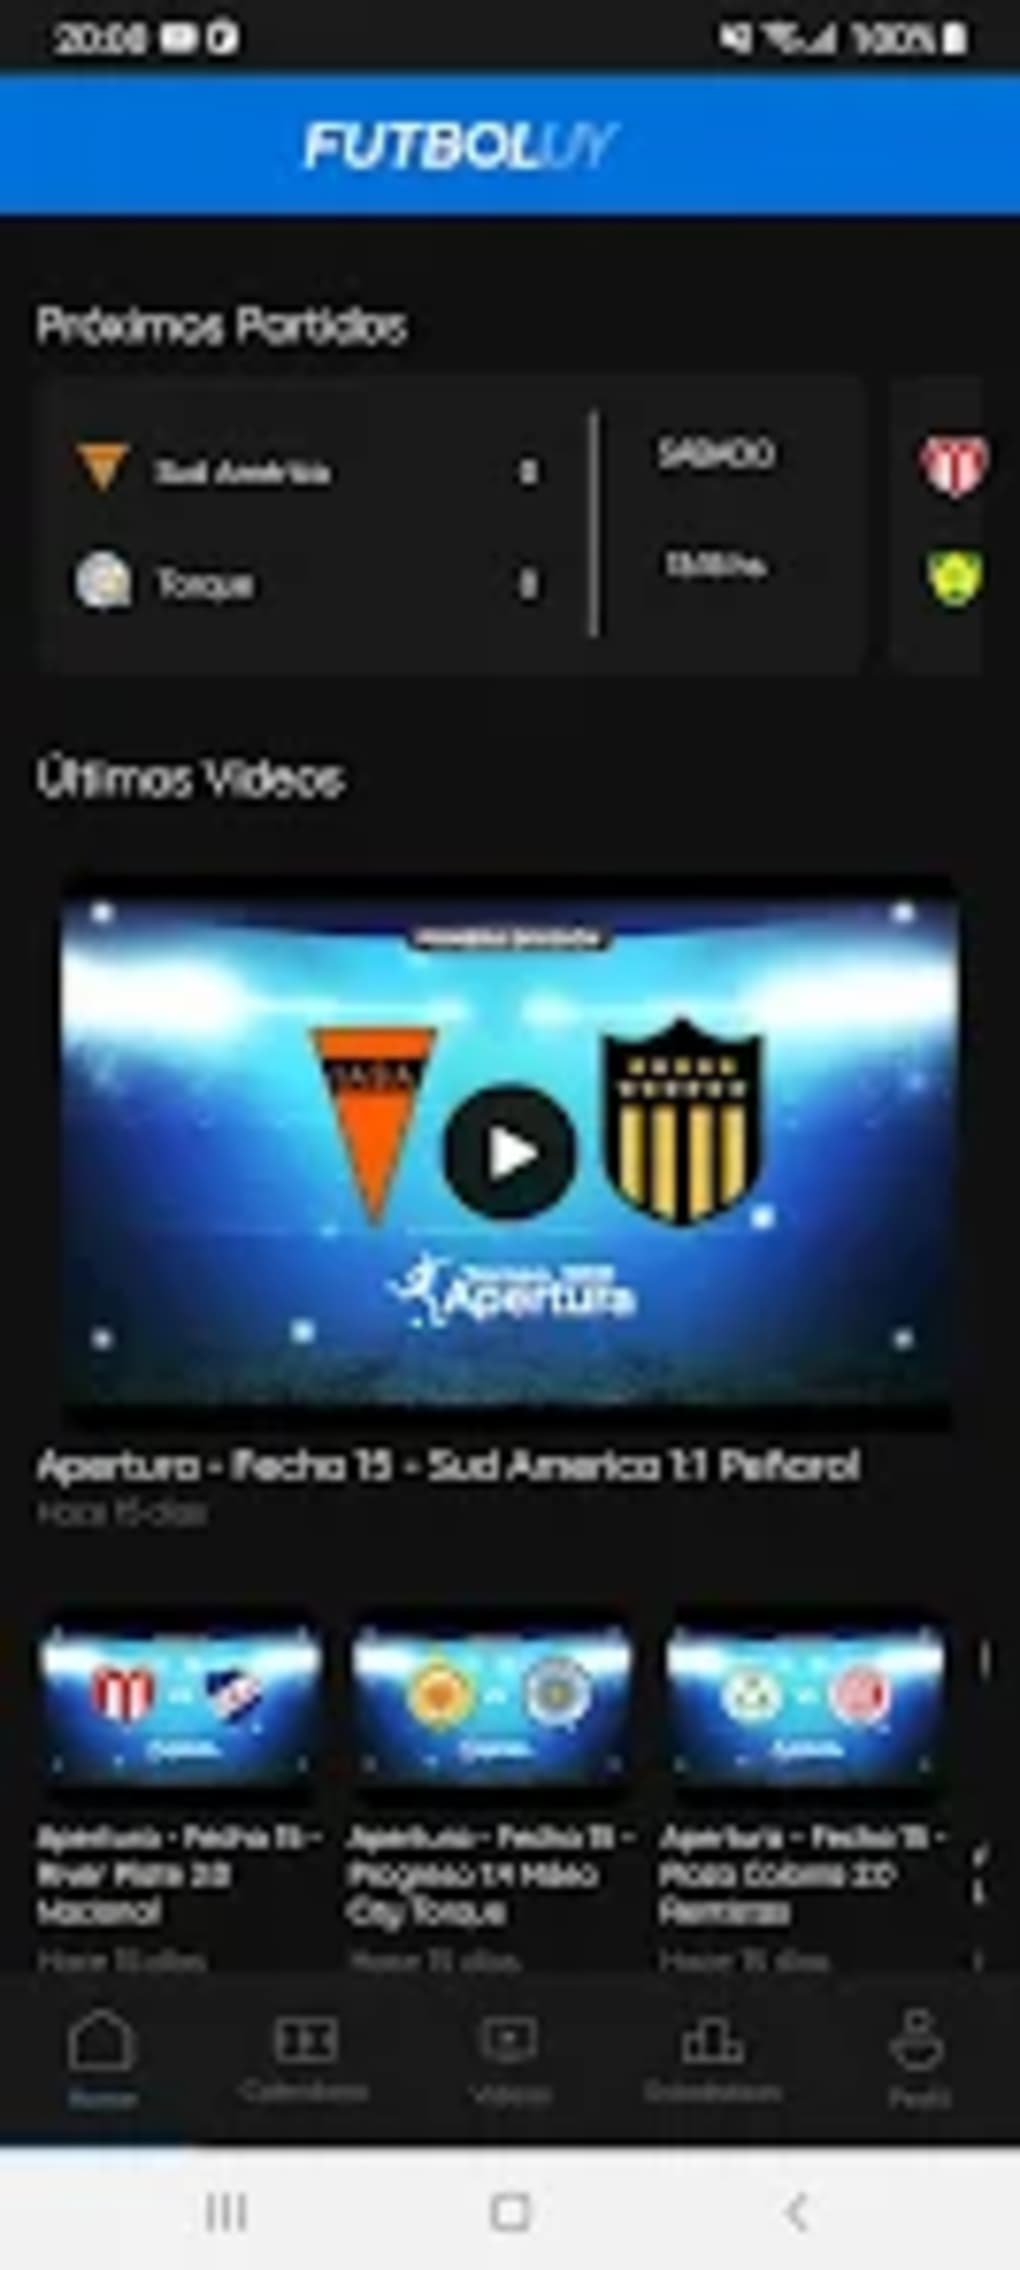 Tenfield - Está disponible gratis la aplicación Fútbol